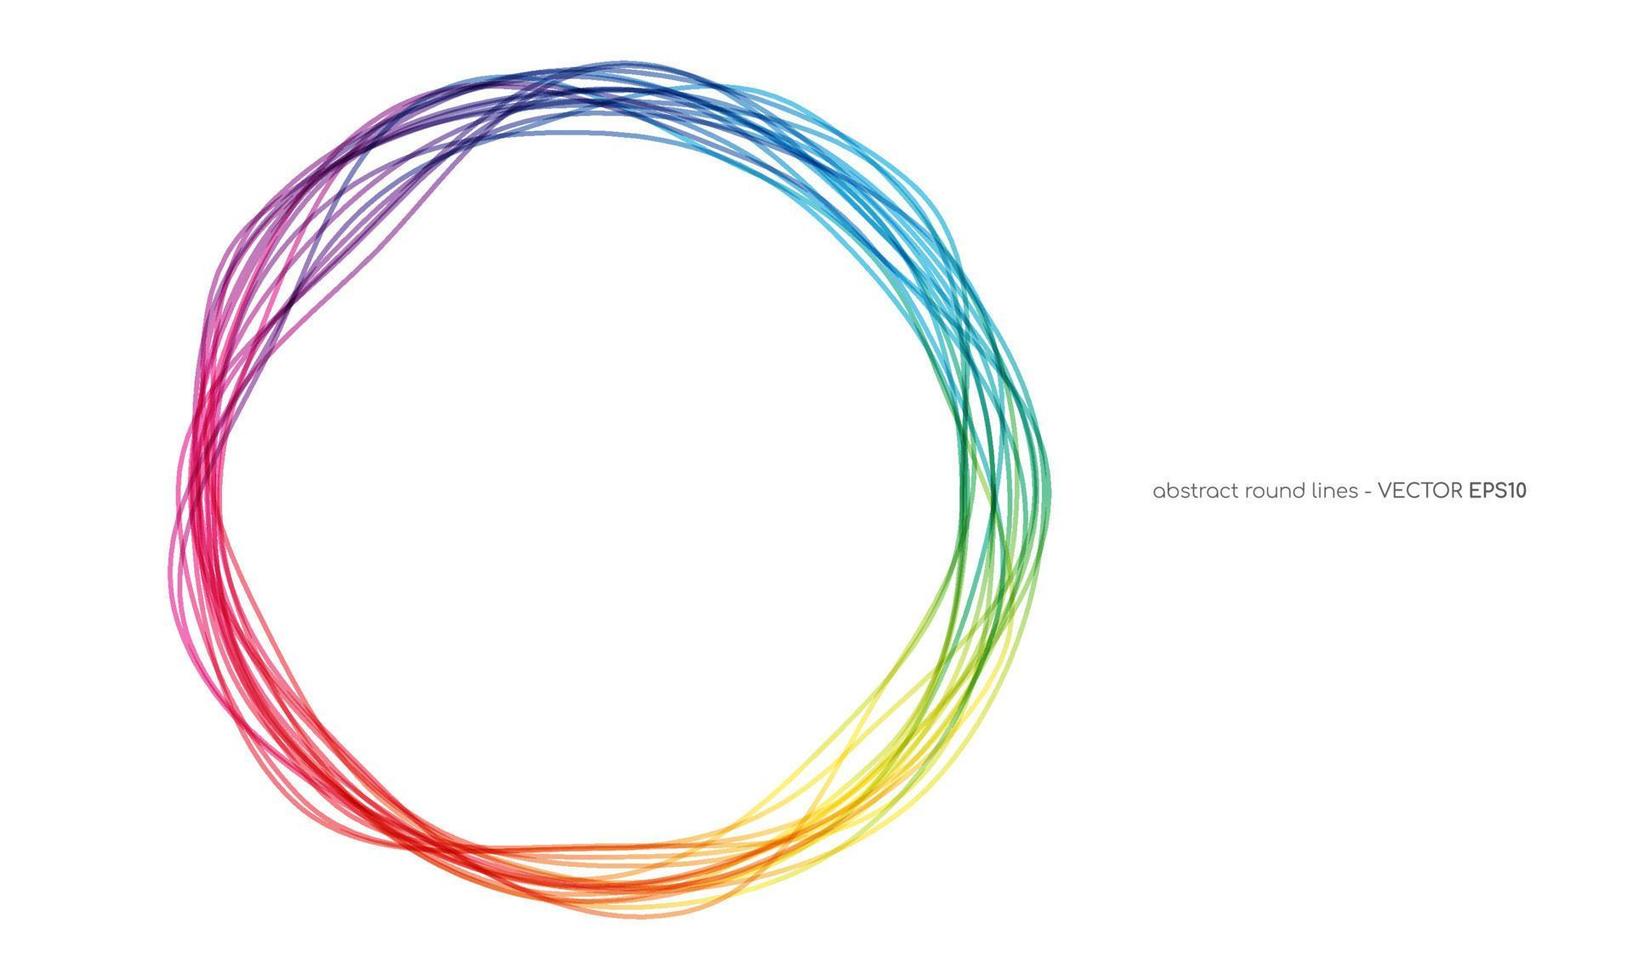 linee di cerchi astratti vettoriali cornice rotonda arcobaleno colorato isolato su sfondo bianco con spazio vuoto per il testo